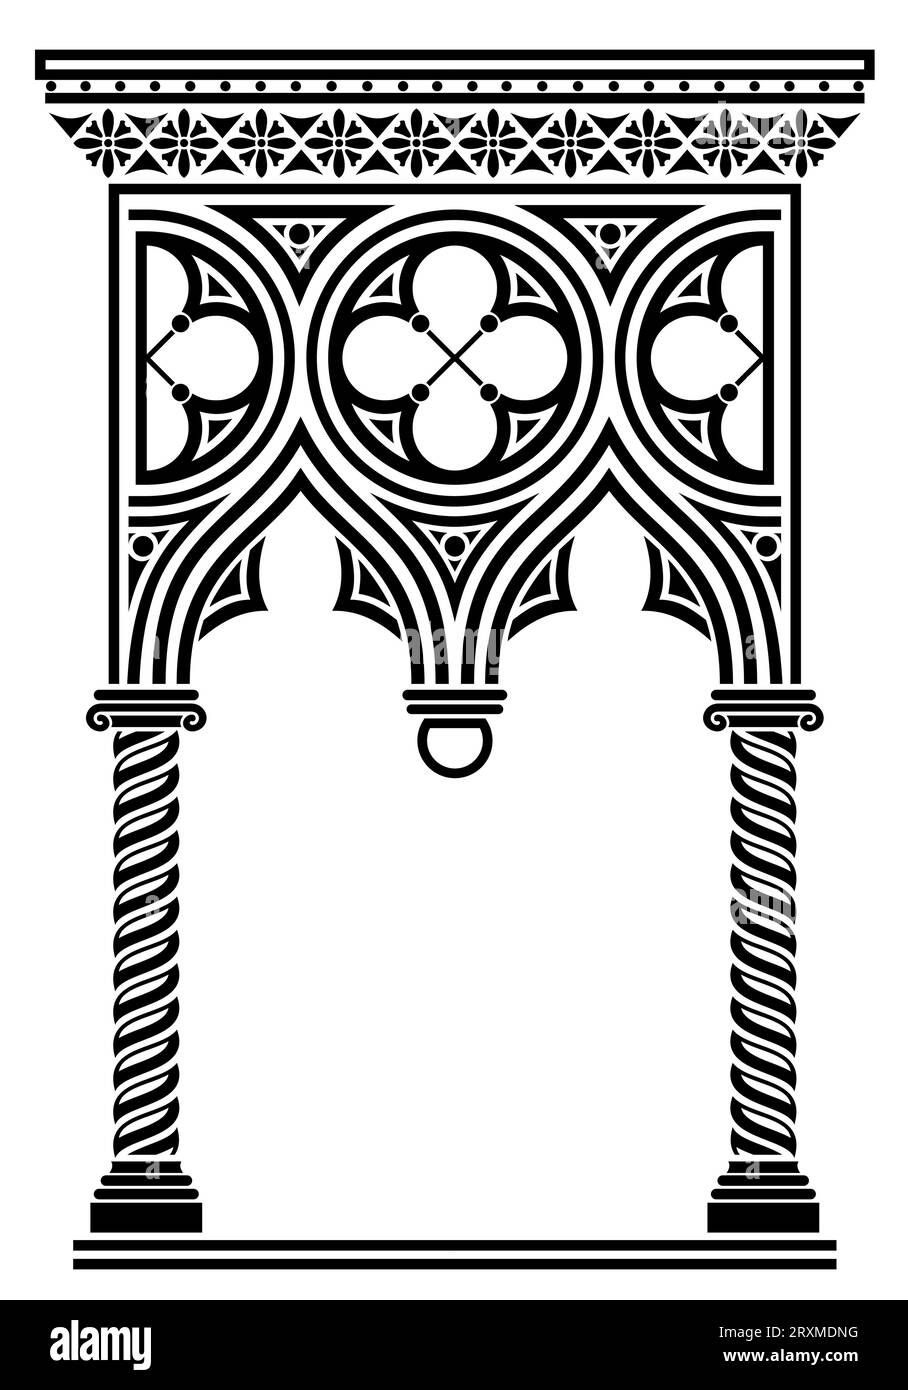 Ancienne arche architecturale gothique vénitienne ou galerie Illustration de Vecteur